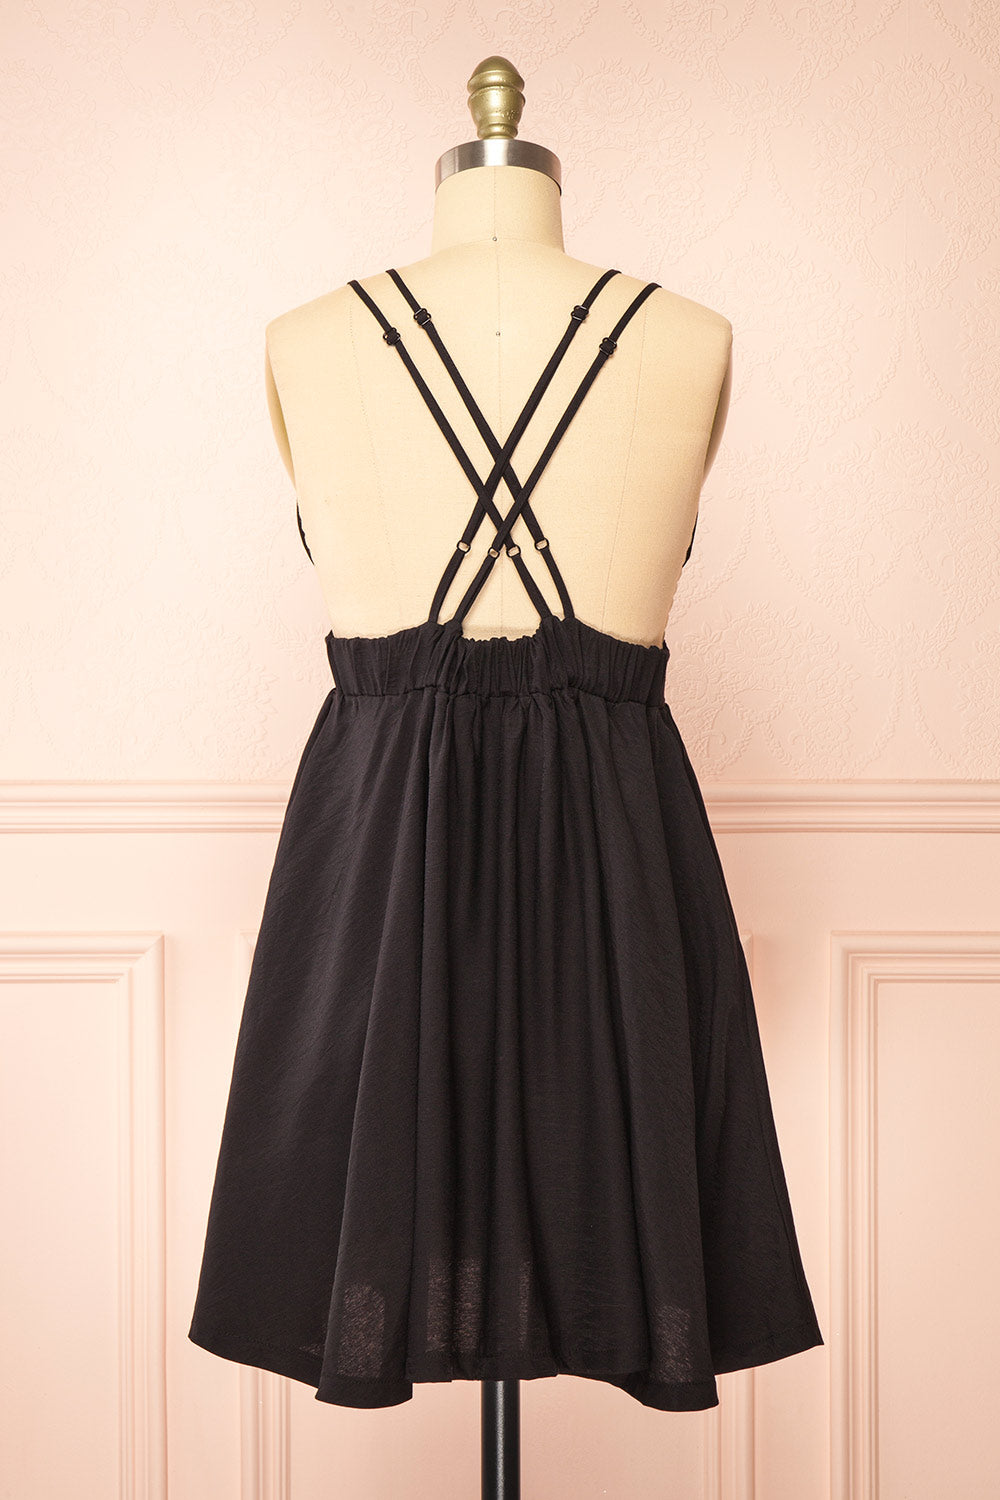 Tillie Short Black Plunging Neckline Dress | Boutique 1861 back view